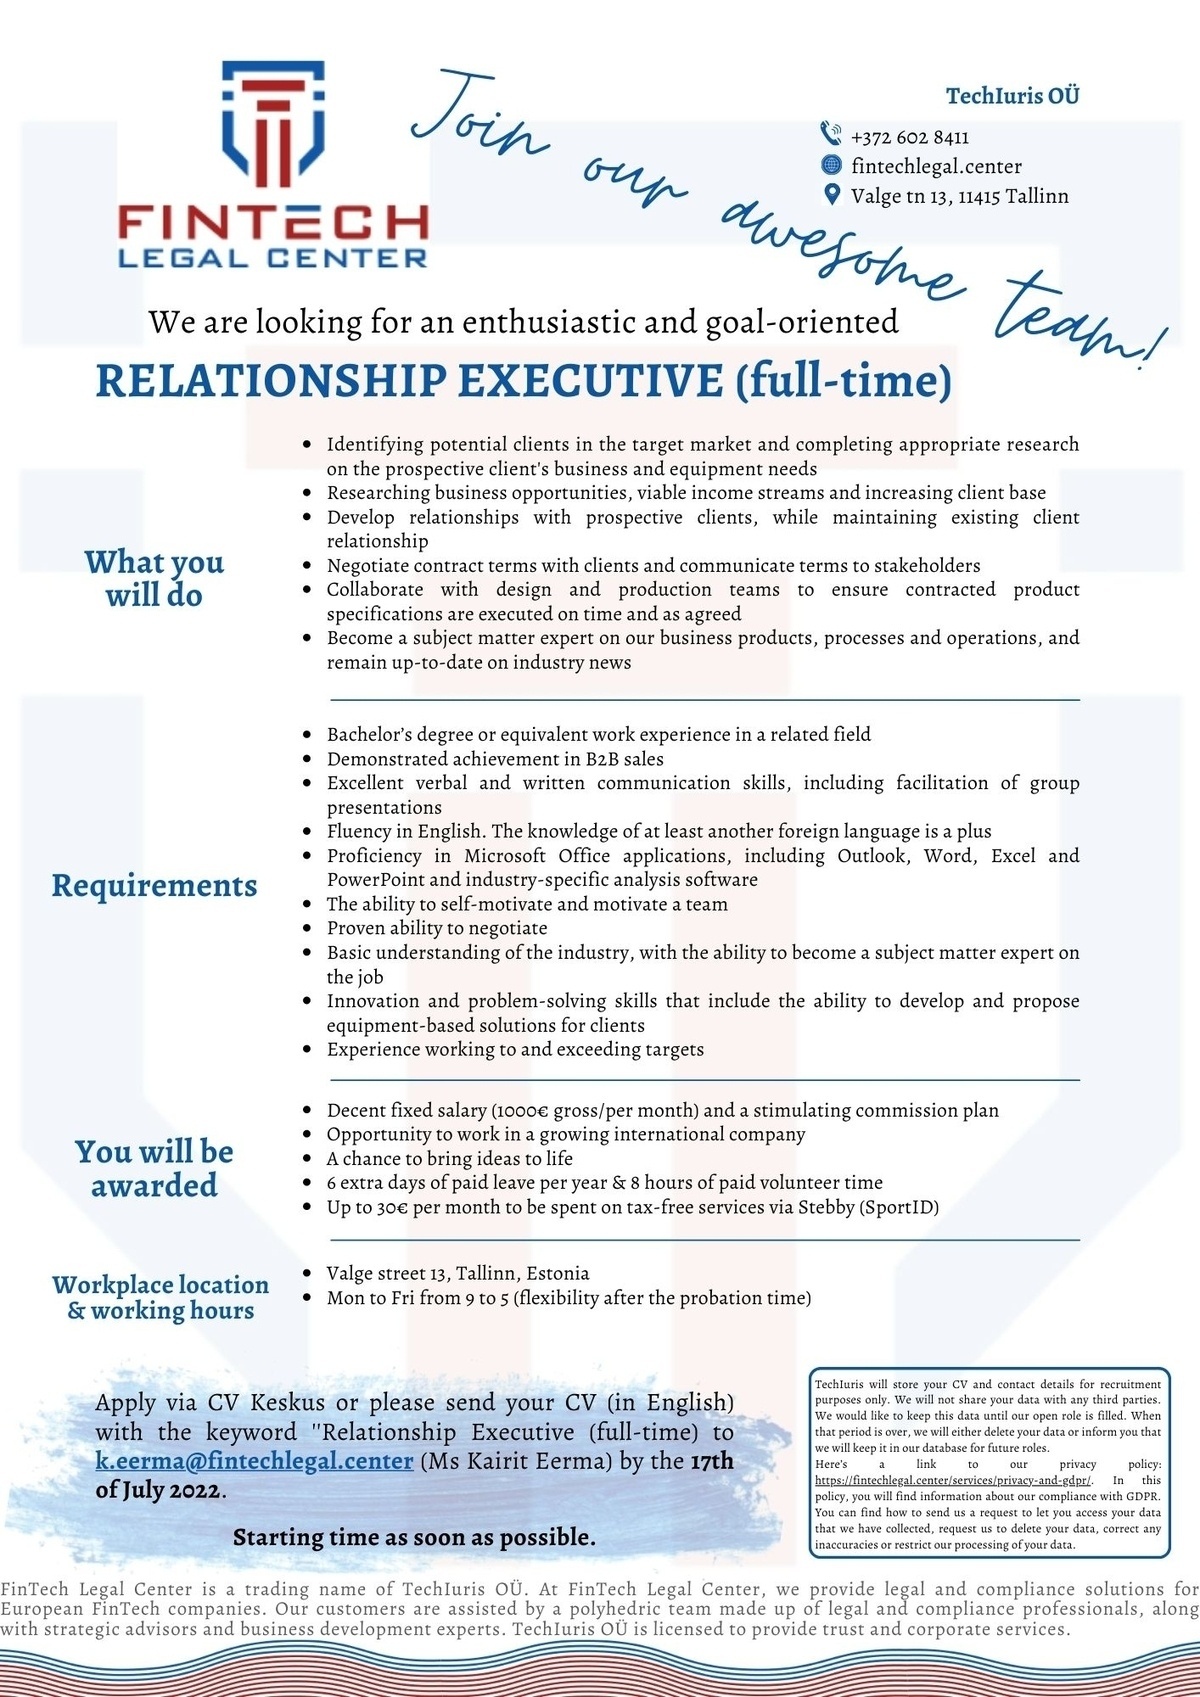 TechIuris OÜ Relationship Executive (full-time)